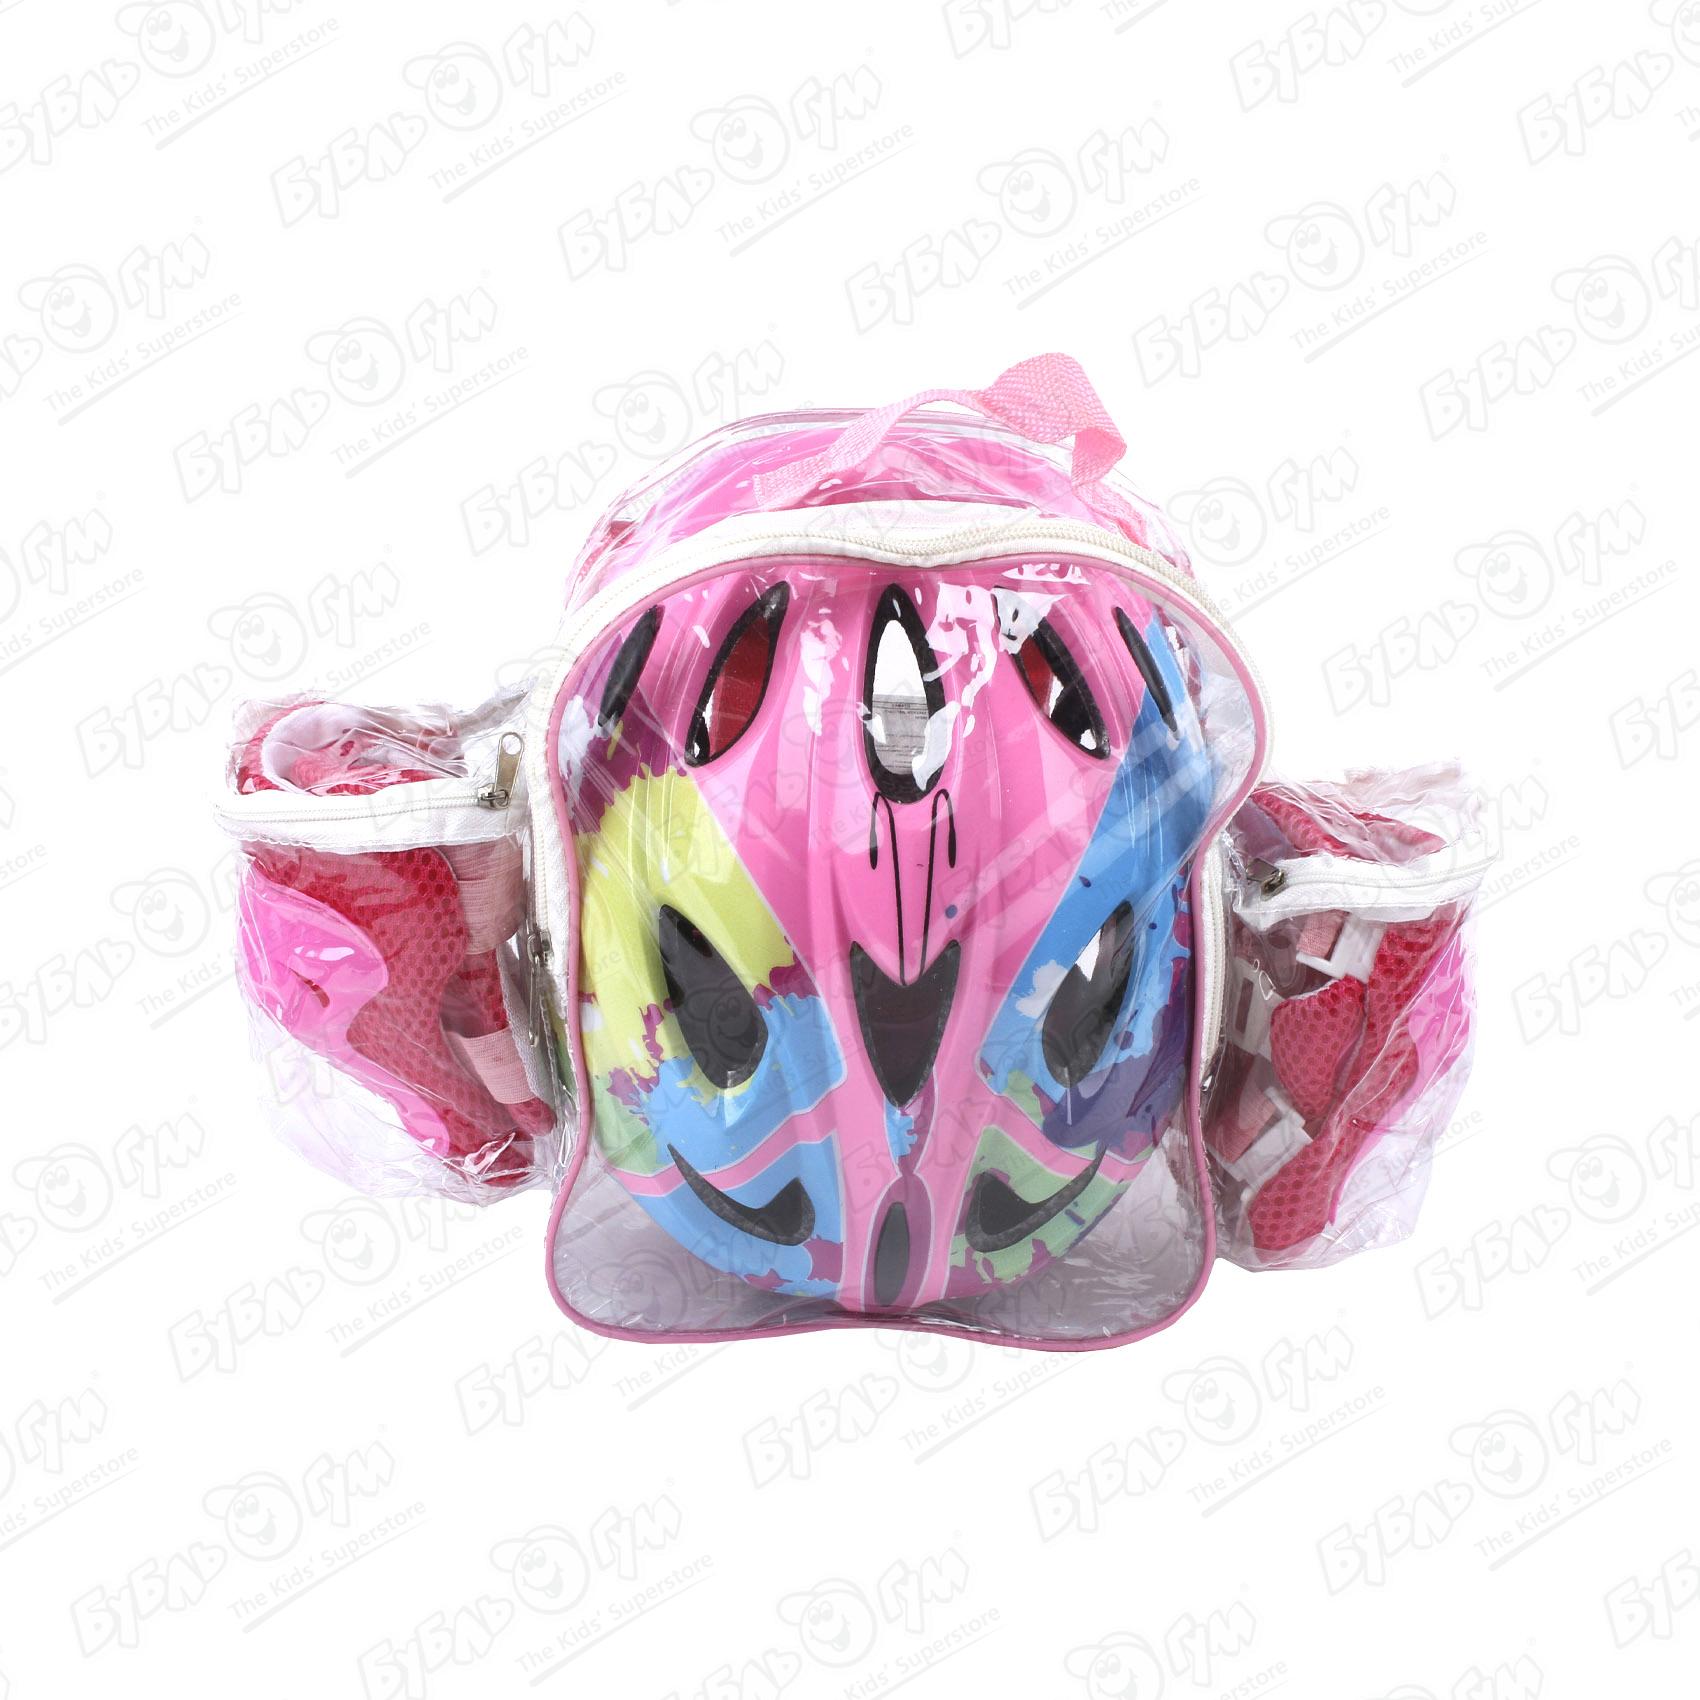 Комплект защиты ROLLO PRO наколенники защита для рук и шлем в рюкзаке розовый 51-54см комплект защиты компания друзей налокотники наколенники полуперчатки малинов jb0208471